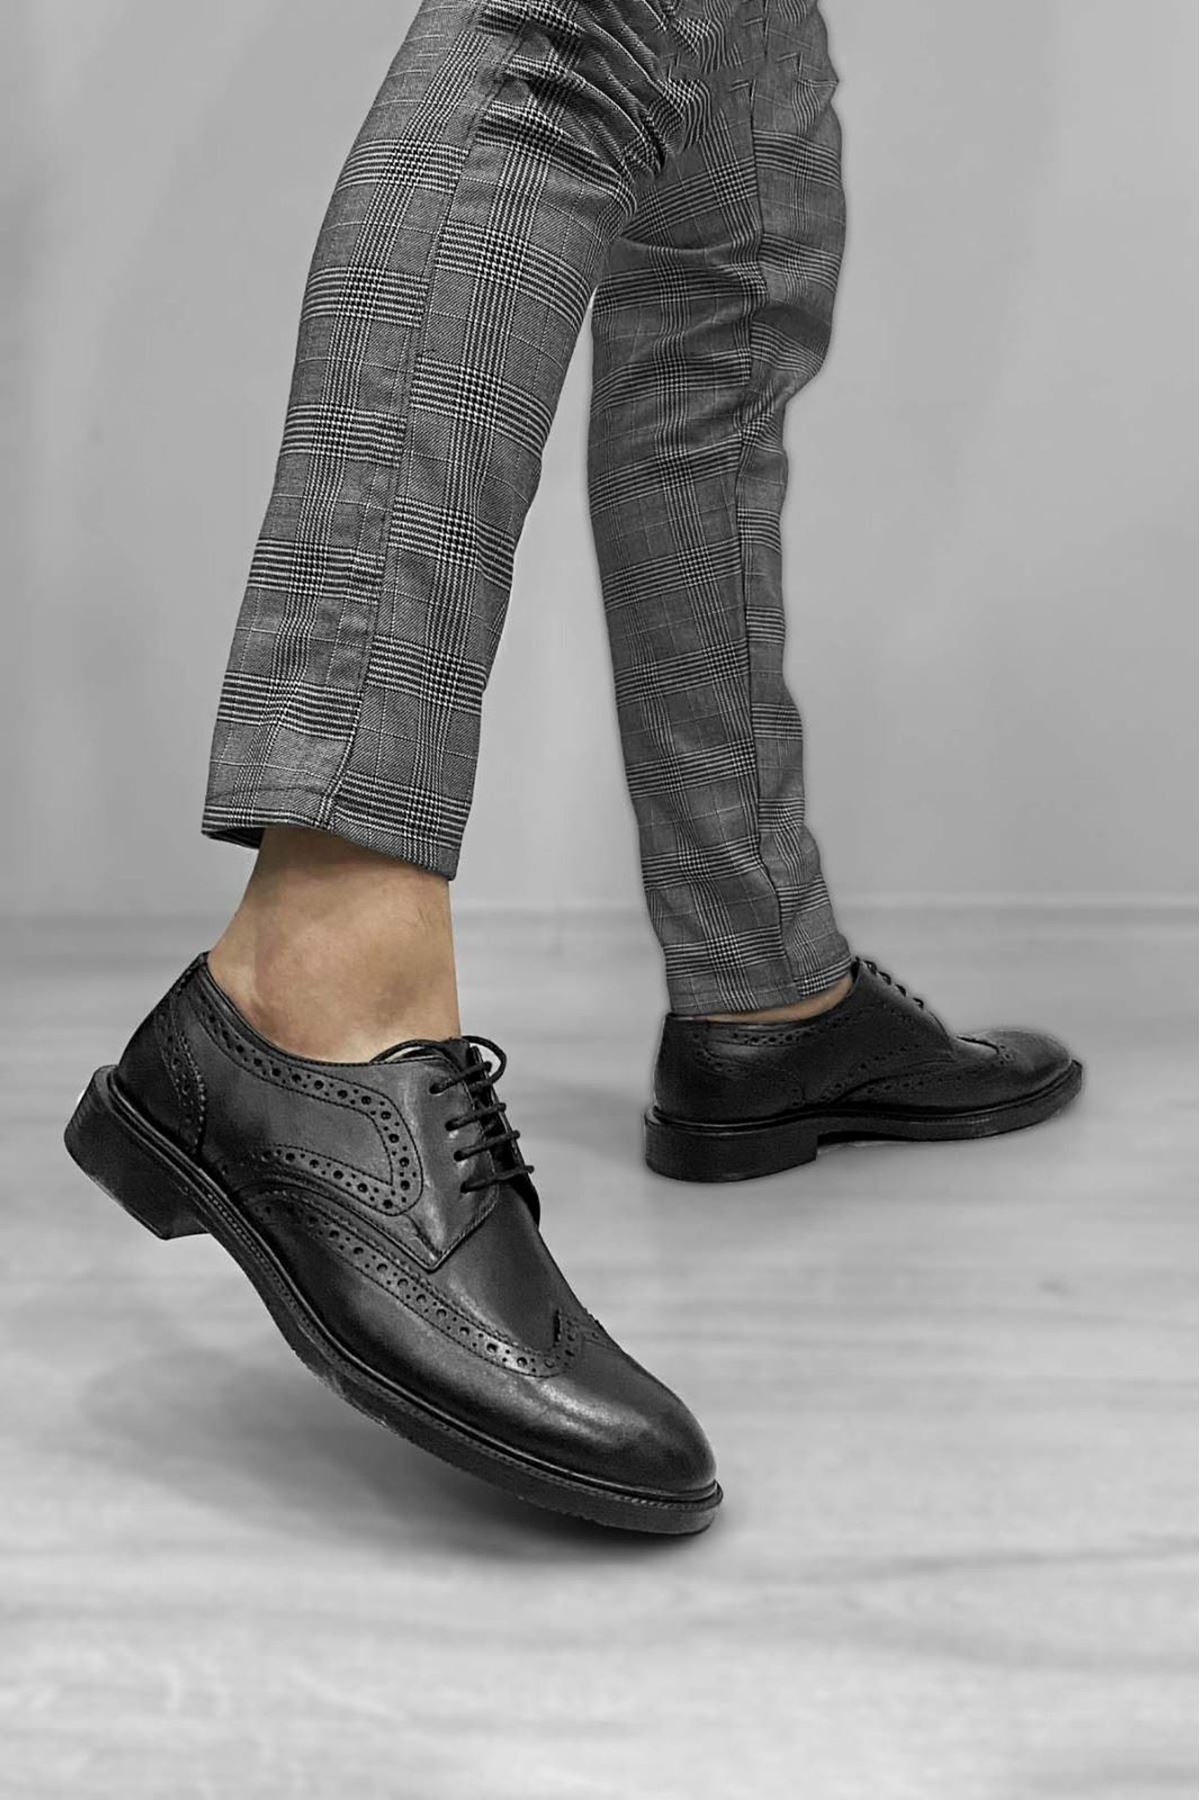 Boy Uzatan Ayakkabı Gizli Topuklu Siyah Klasik Hakiki Deri Desenli Erkek Ayakkabı MYY535